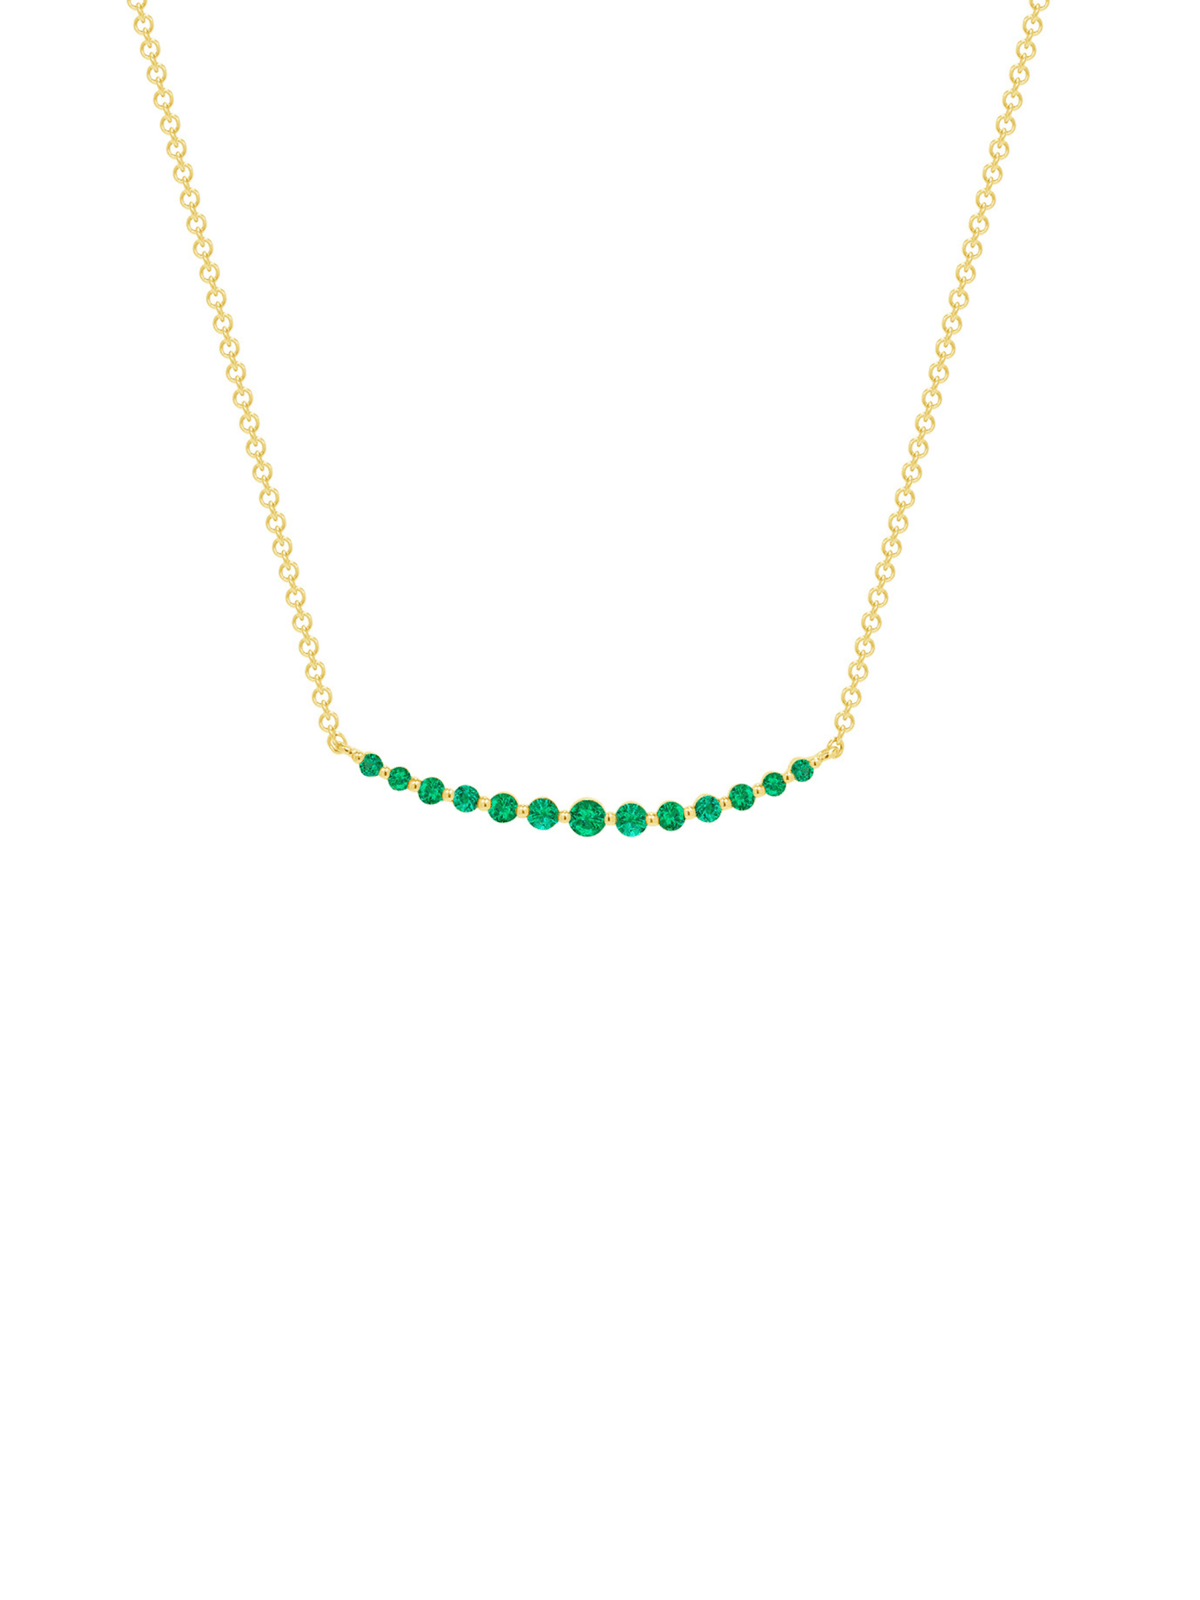 Chasing Emeralds Necklace 14K - LeMel